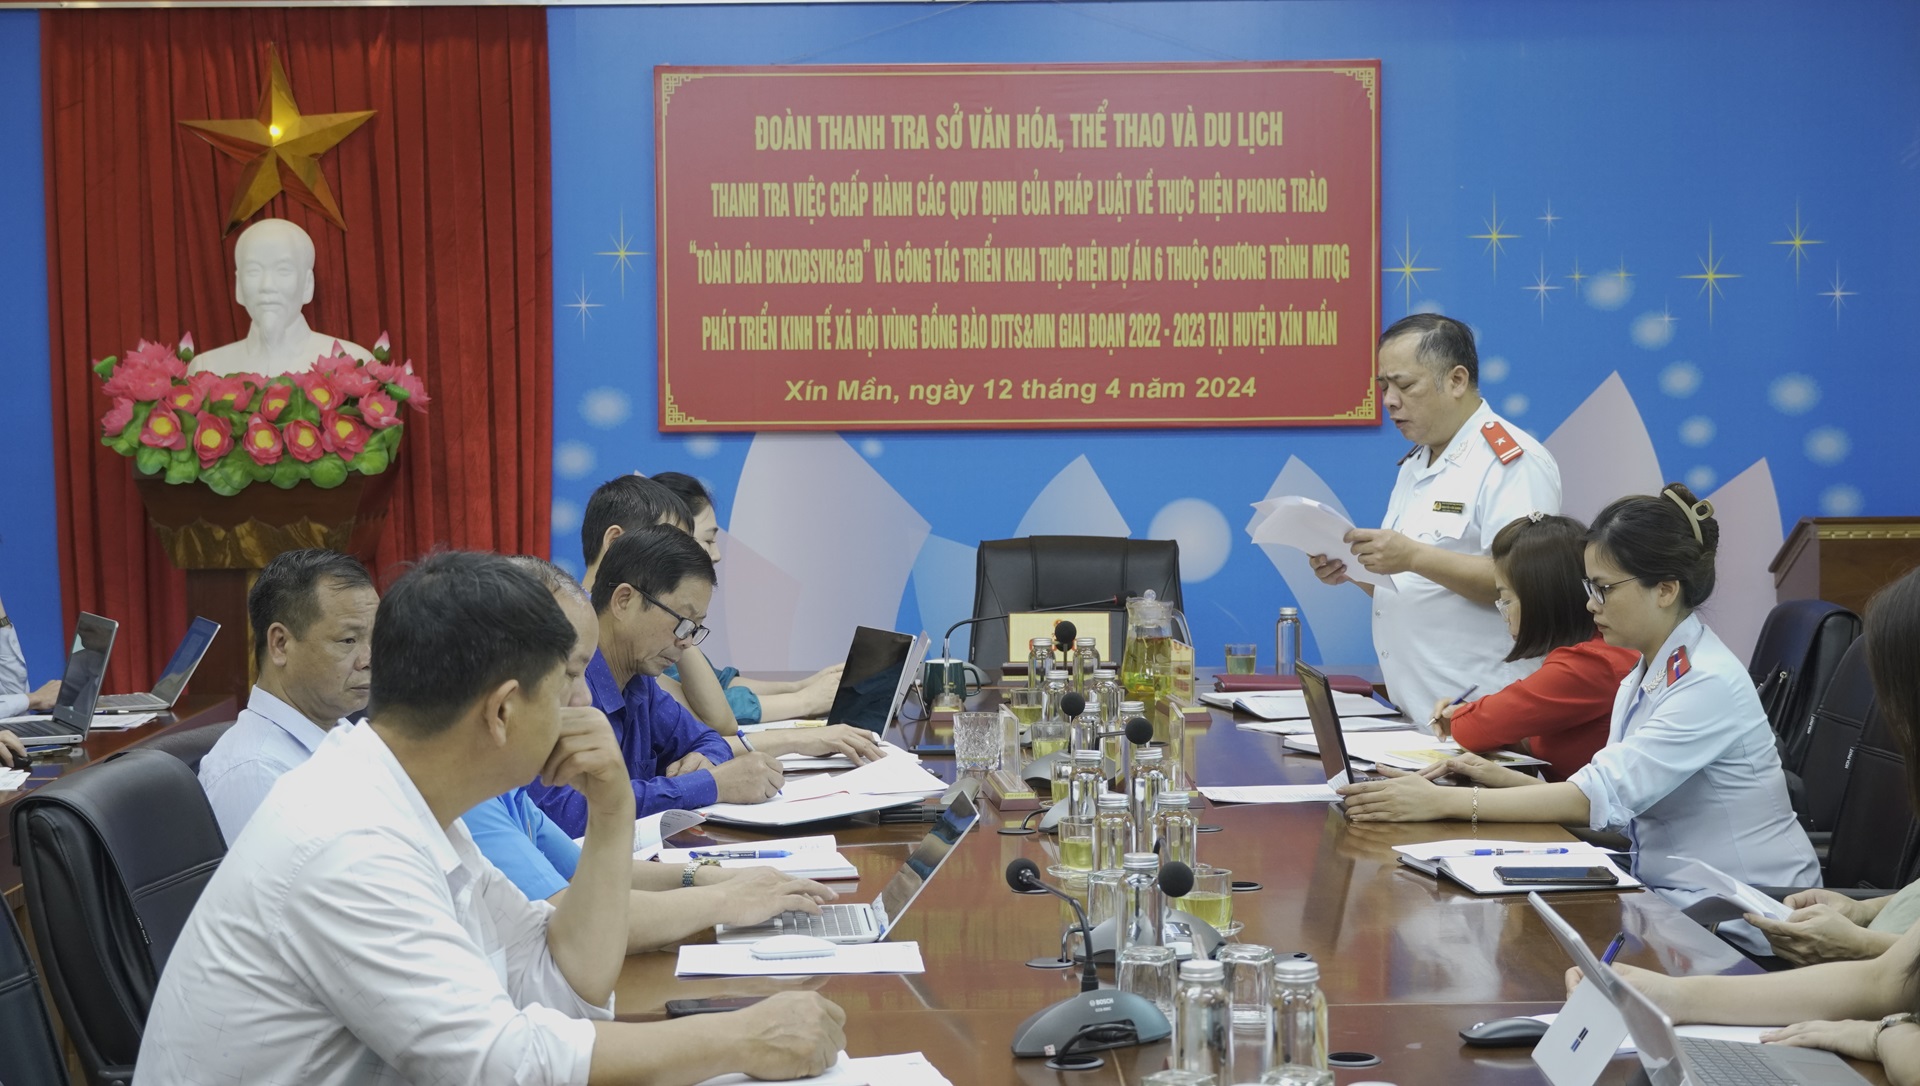 Đoàn thanh tra Sở Văn hóa, Thể thao và Du lịch thanh tra tại huyện Xín Mần